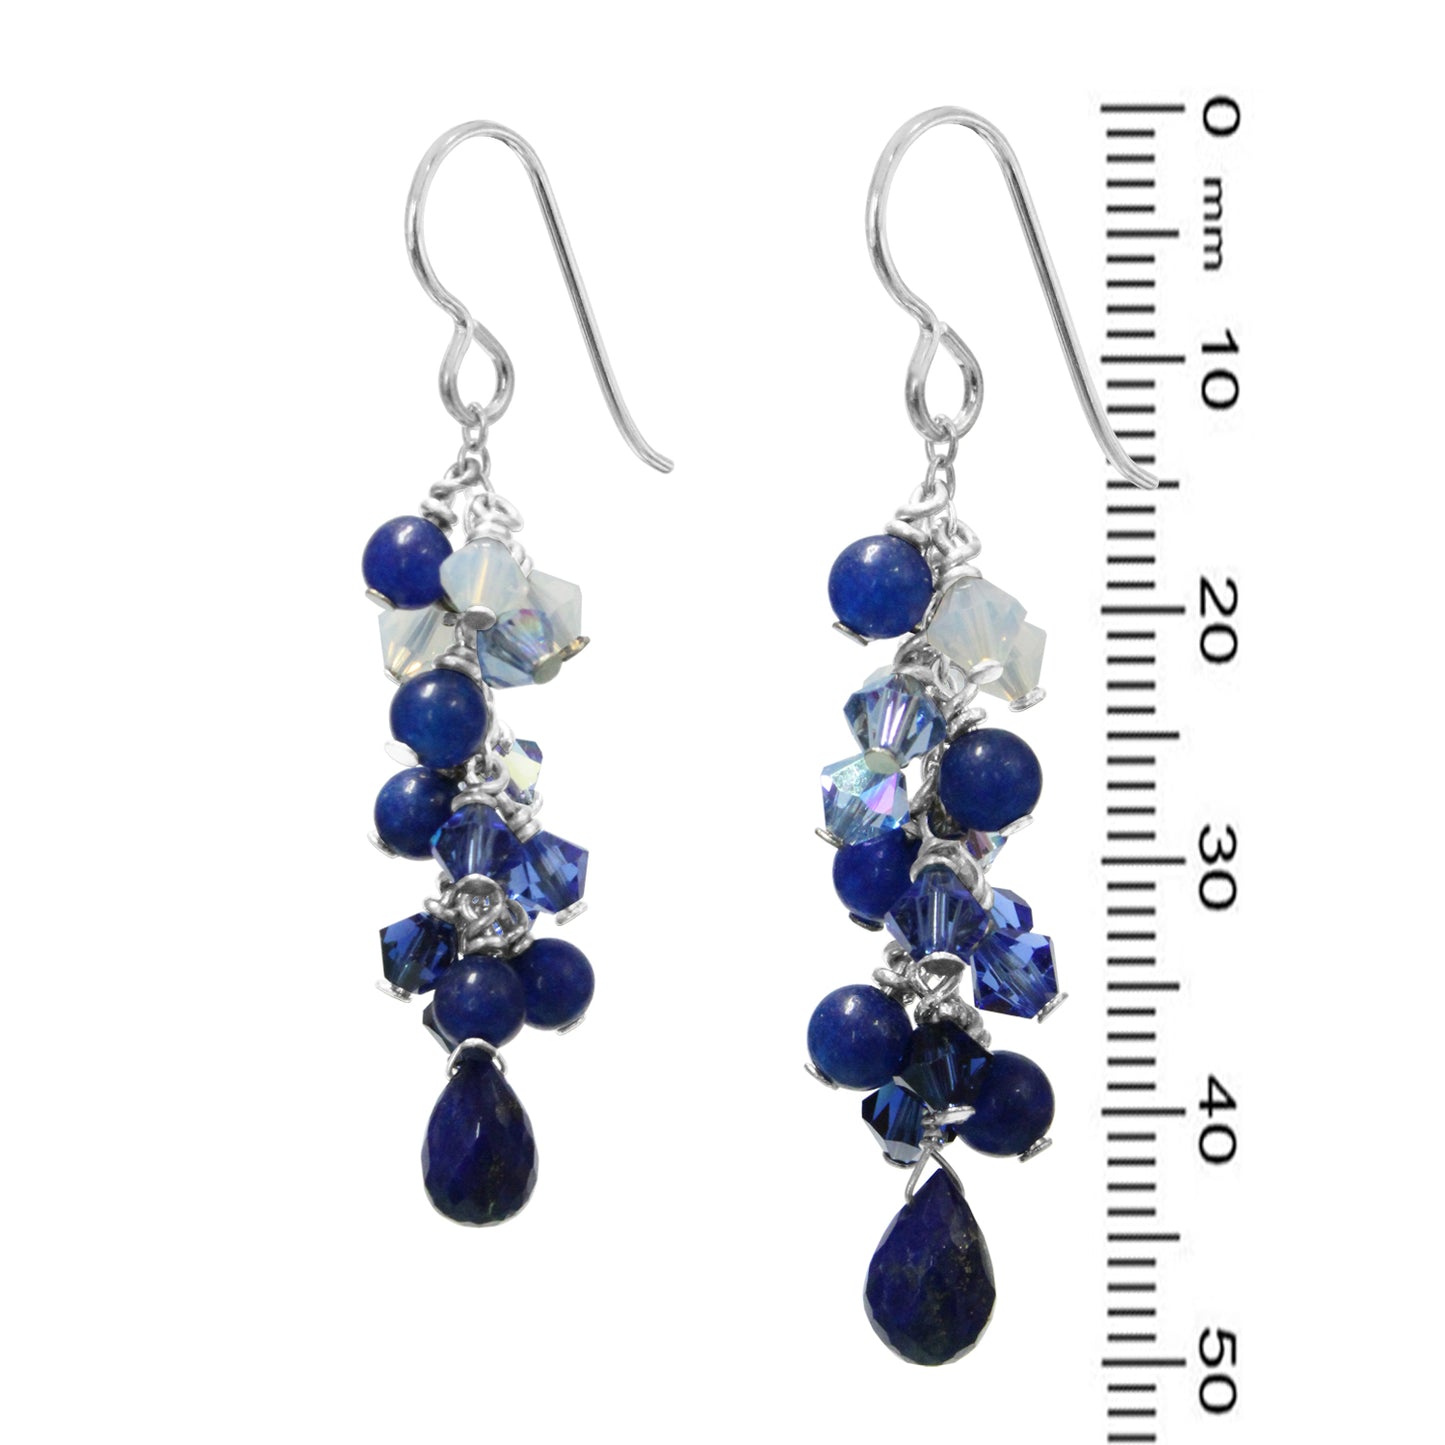 Blue Lapis Cascade Earrings / 50mm length / sterling silver hook earwires